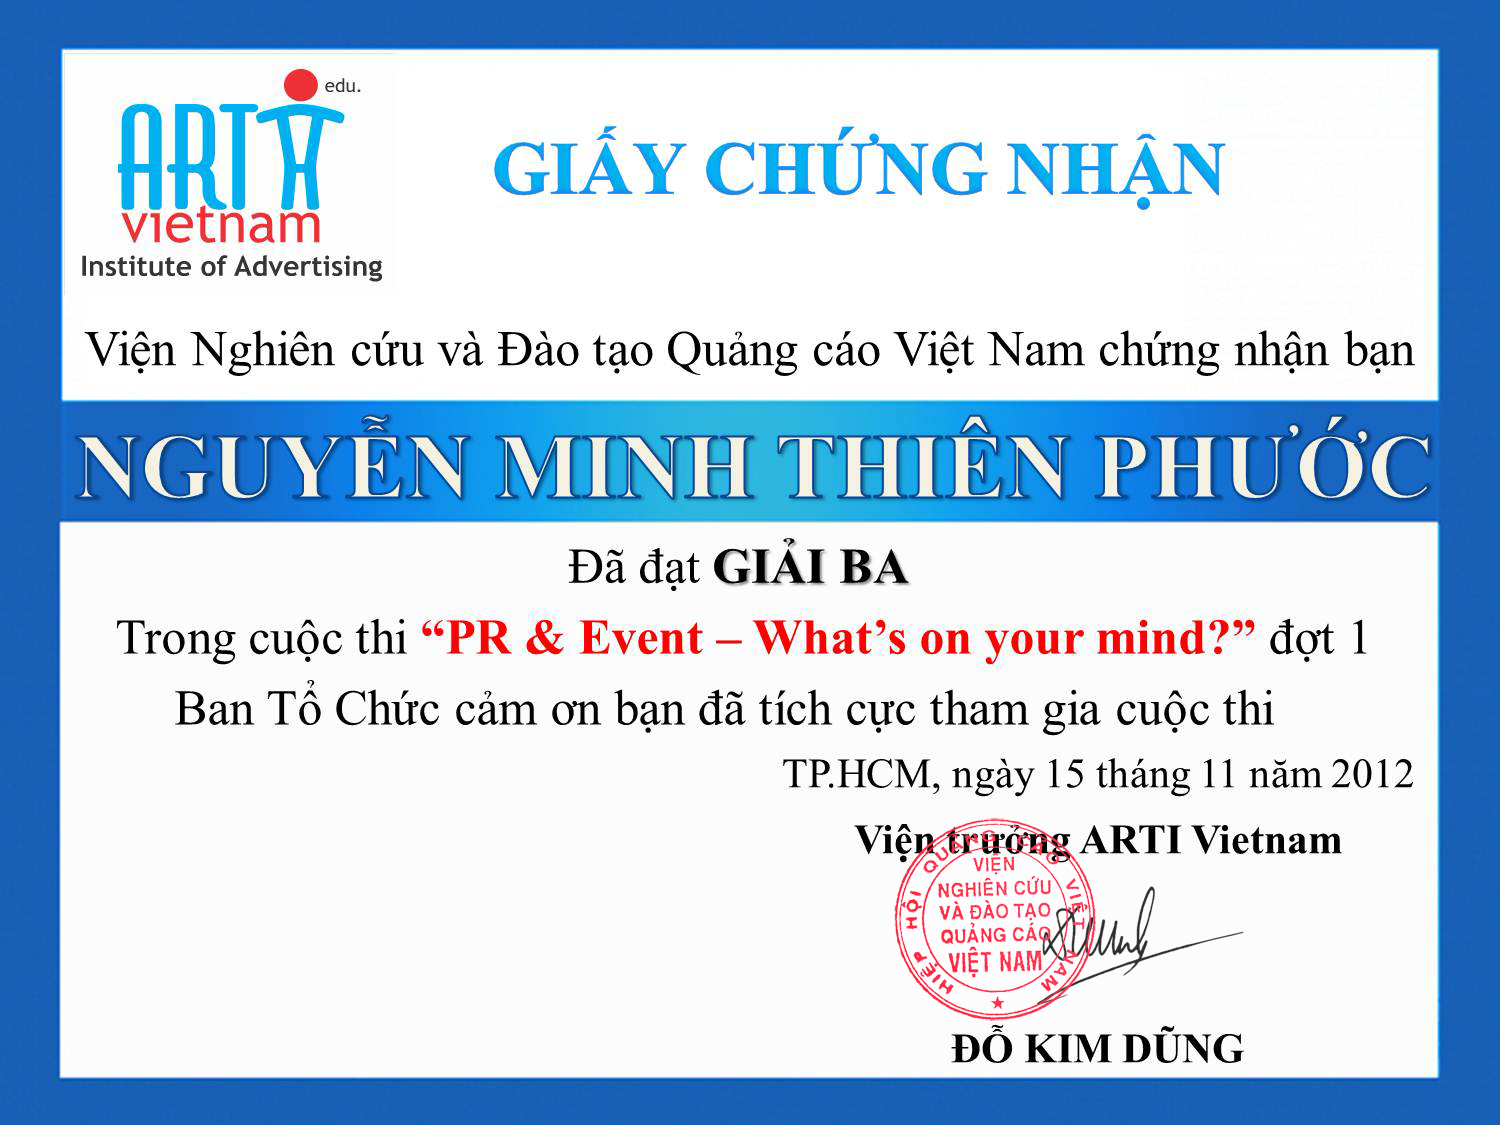 Description: ARTI Vietnam_Giai ba_Nguyen Minh Thien Phuoc